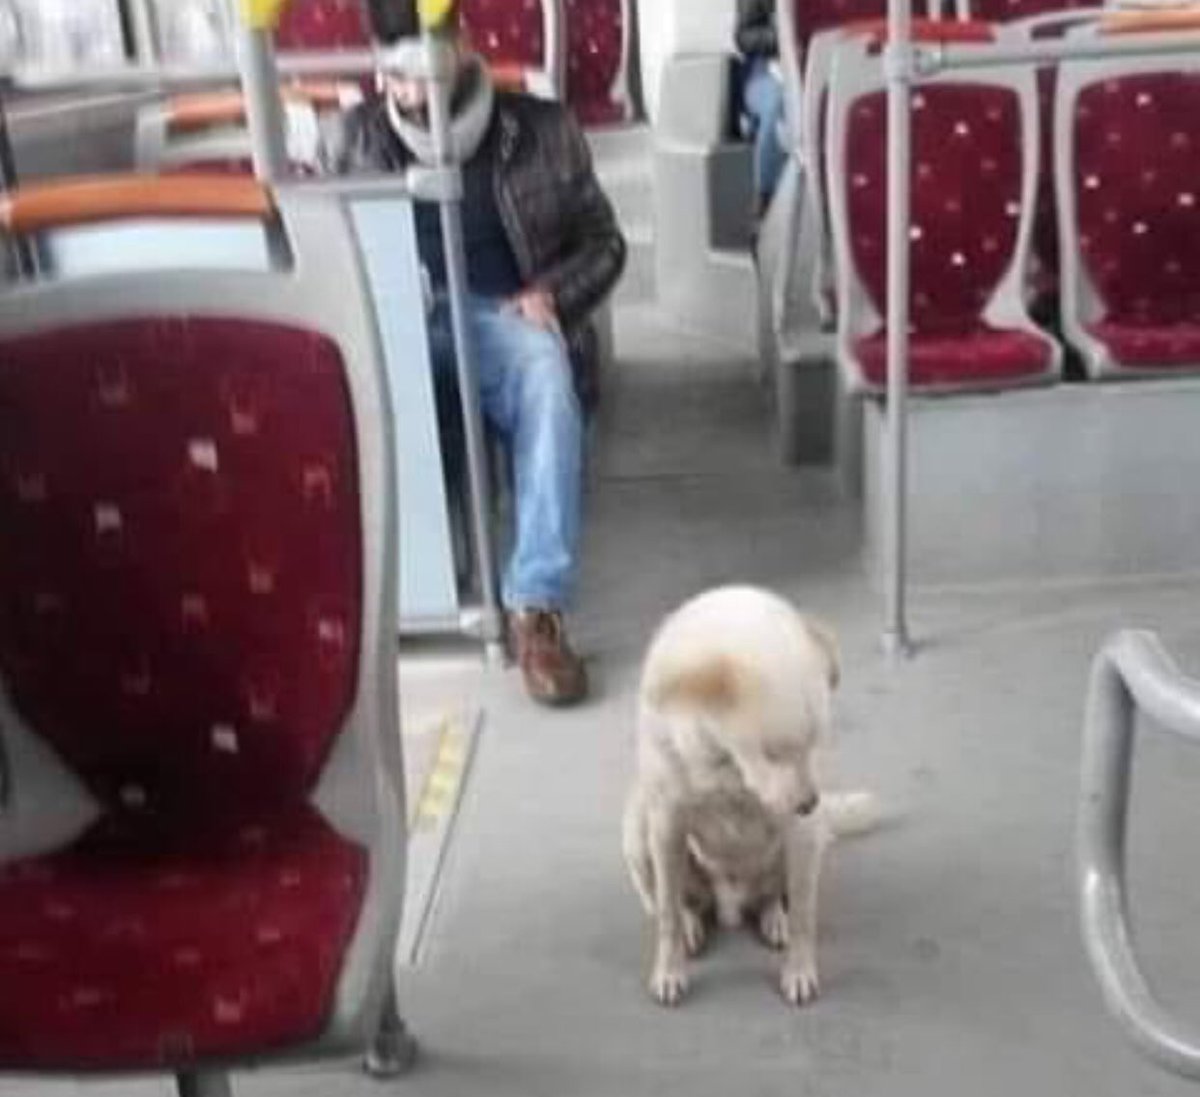 İzmir' de sağanak yağışta kendini otobüse atan köpeği indirmeyip 'rahatsız olan var mı?' diye sorunca, 'hayır' cevabını alınca yola devam eden şoförü kutluyorum...#İzmir ..❤